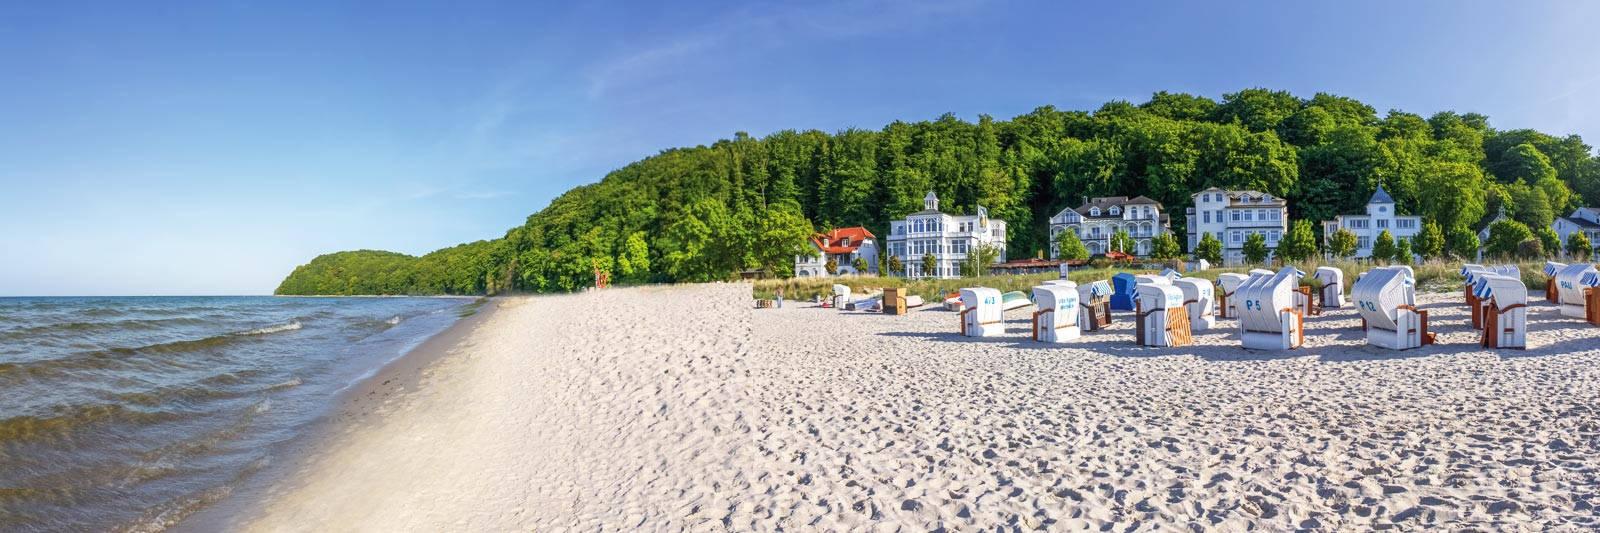 136 Ferienwohnungen und Ferienhäuser in Timmendorf - tourist-online.de